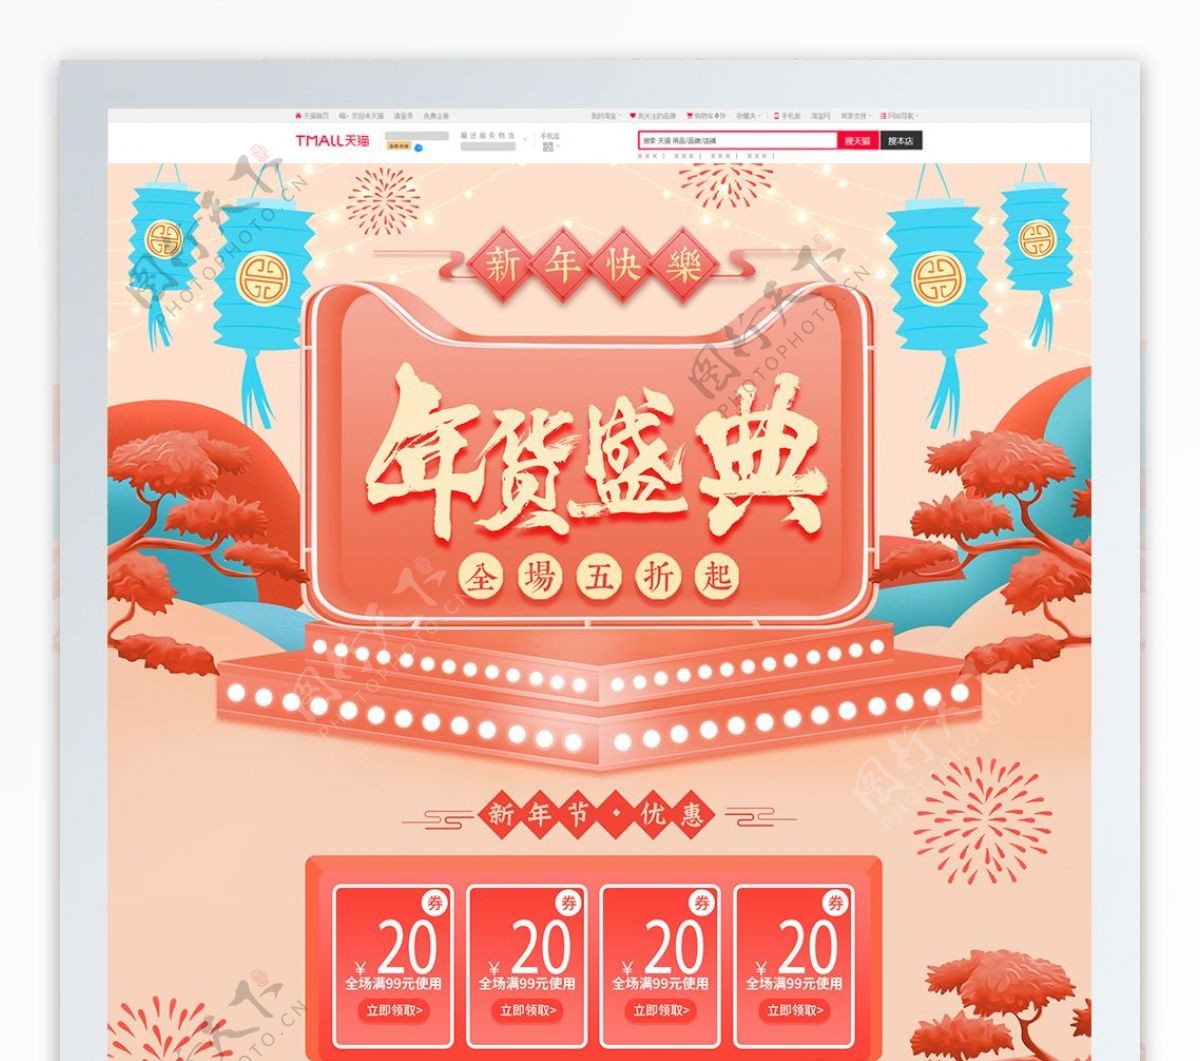 珊瑚红2019新年新春年货节年货盛典首页